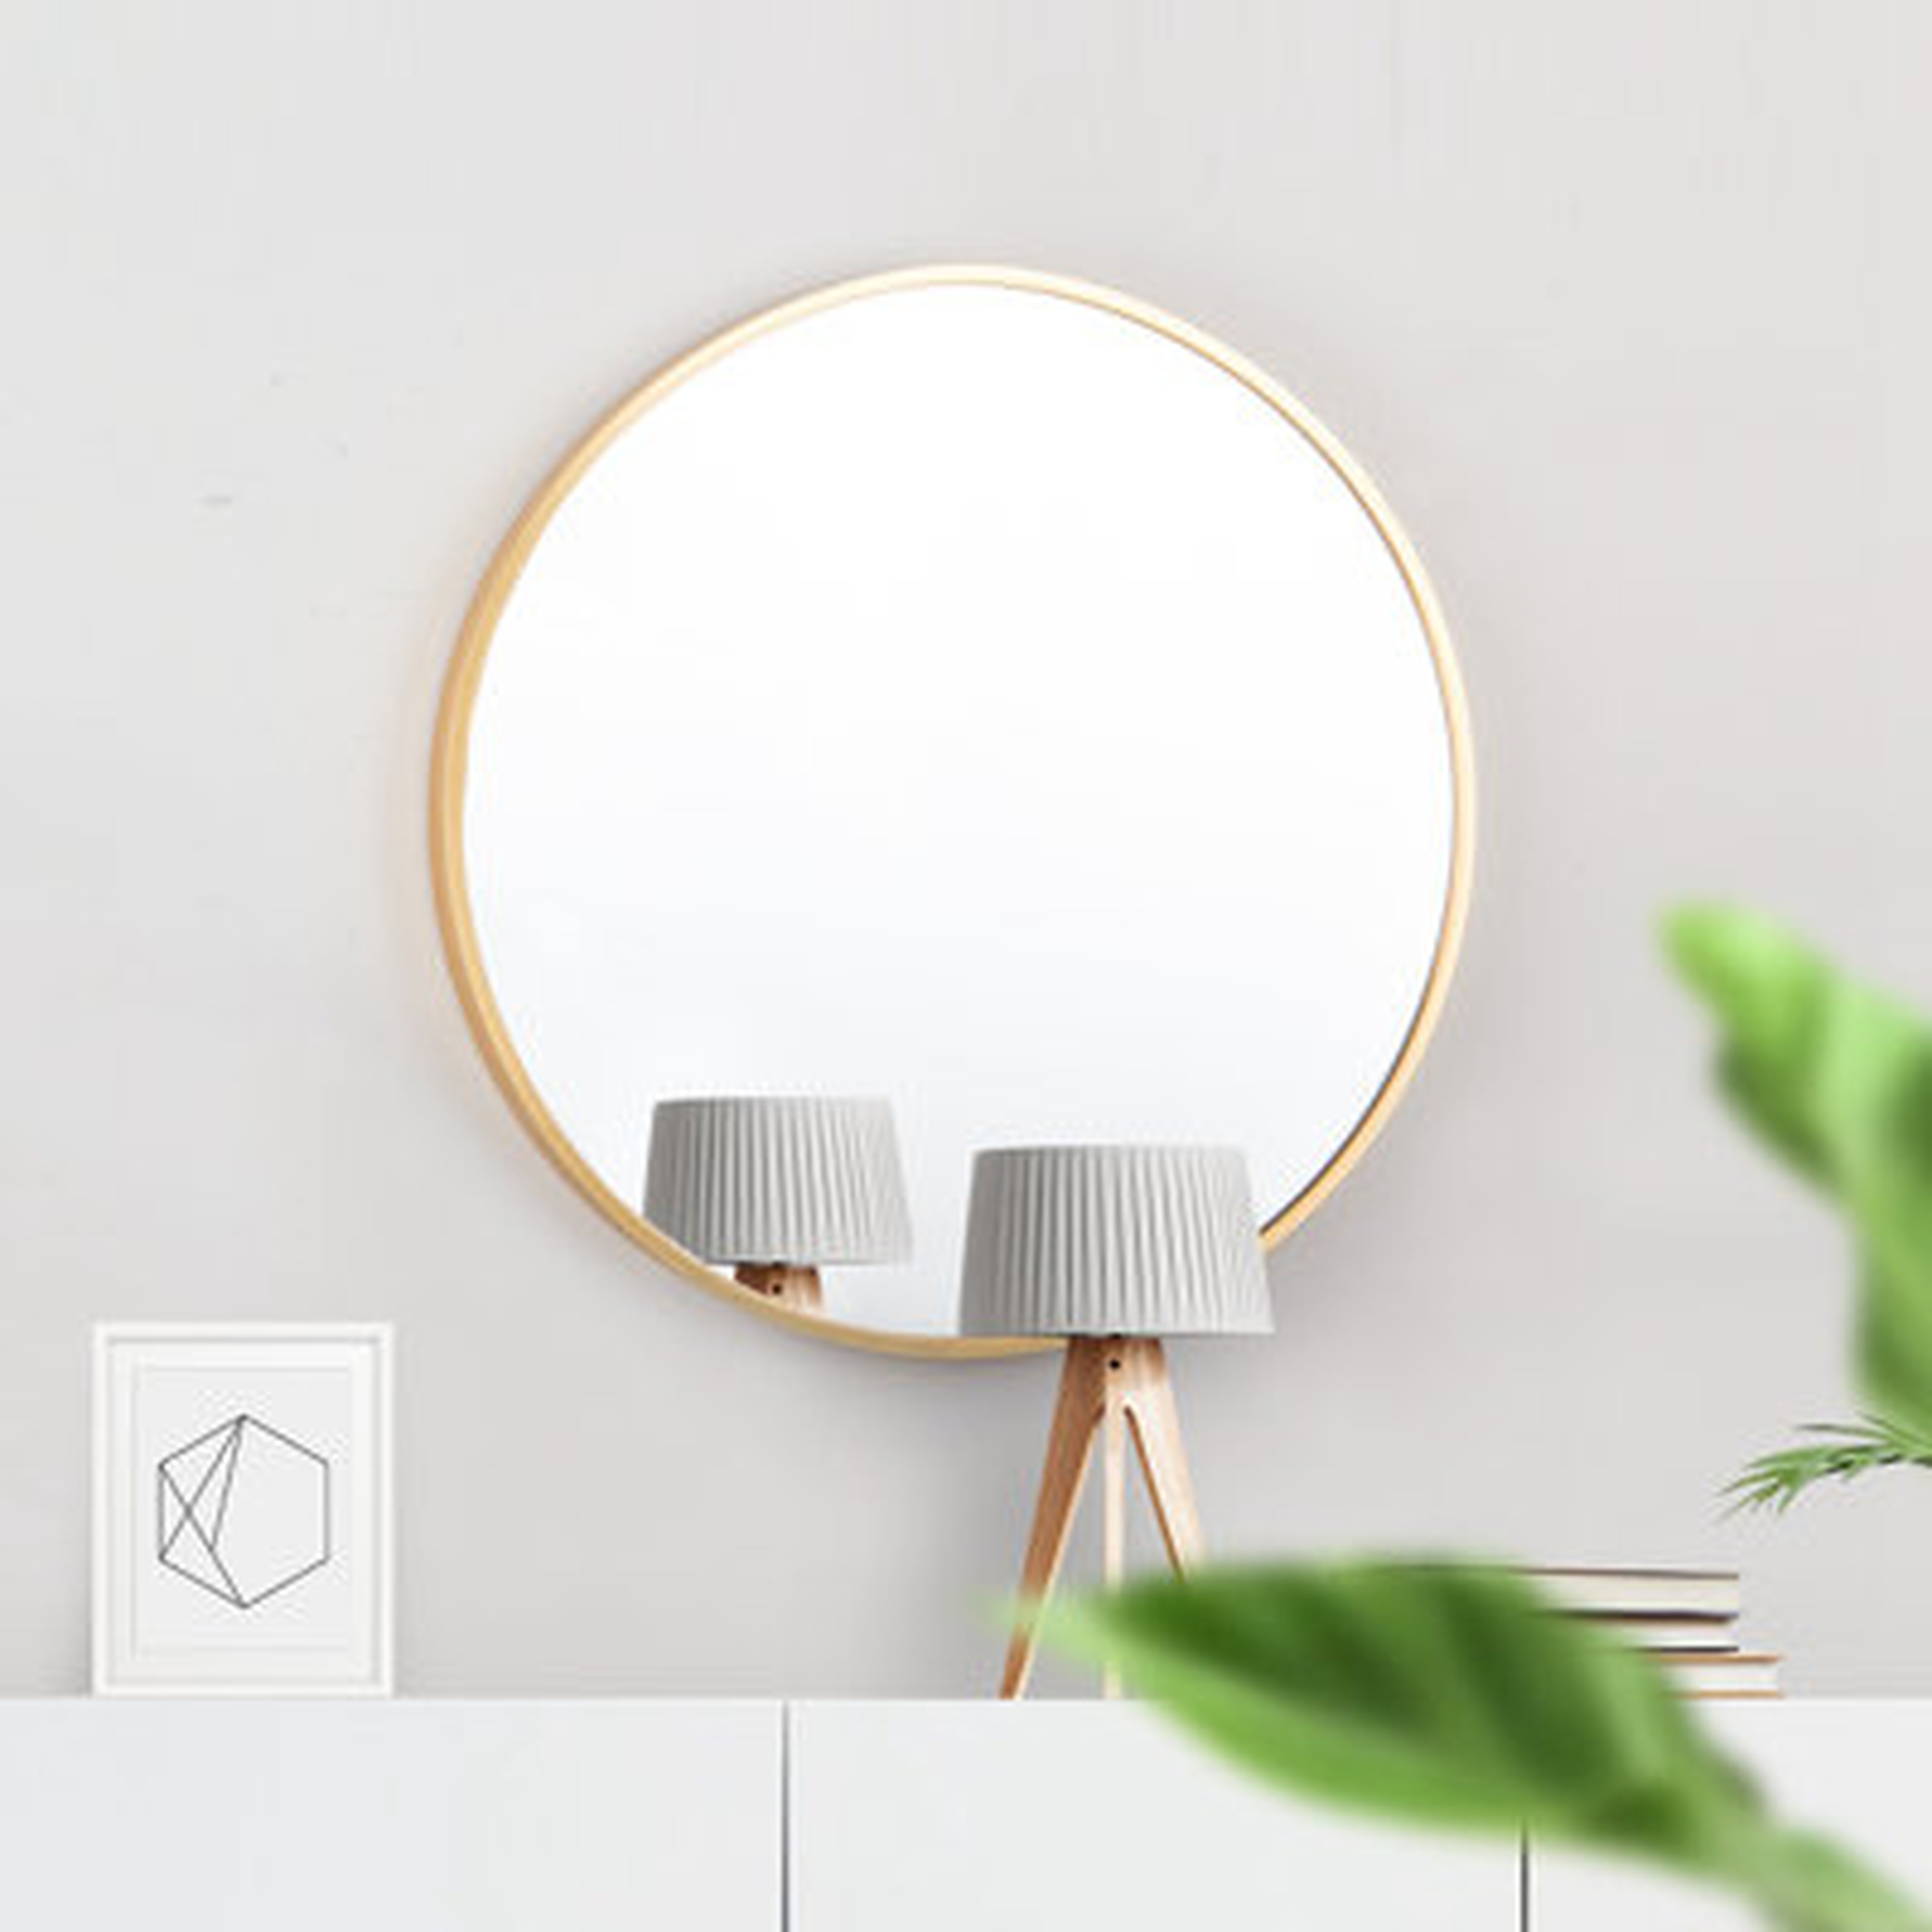 28" Round Wall Accent Mirror Circular Bathroom Make Up Vanity Mirror Entryway Mirror - Wayfair